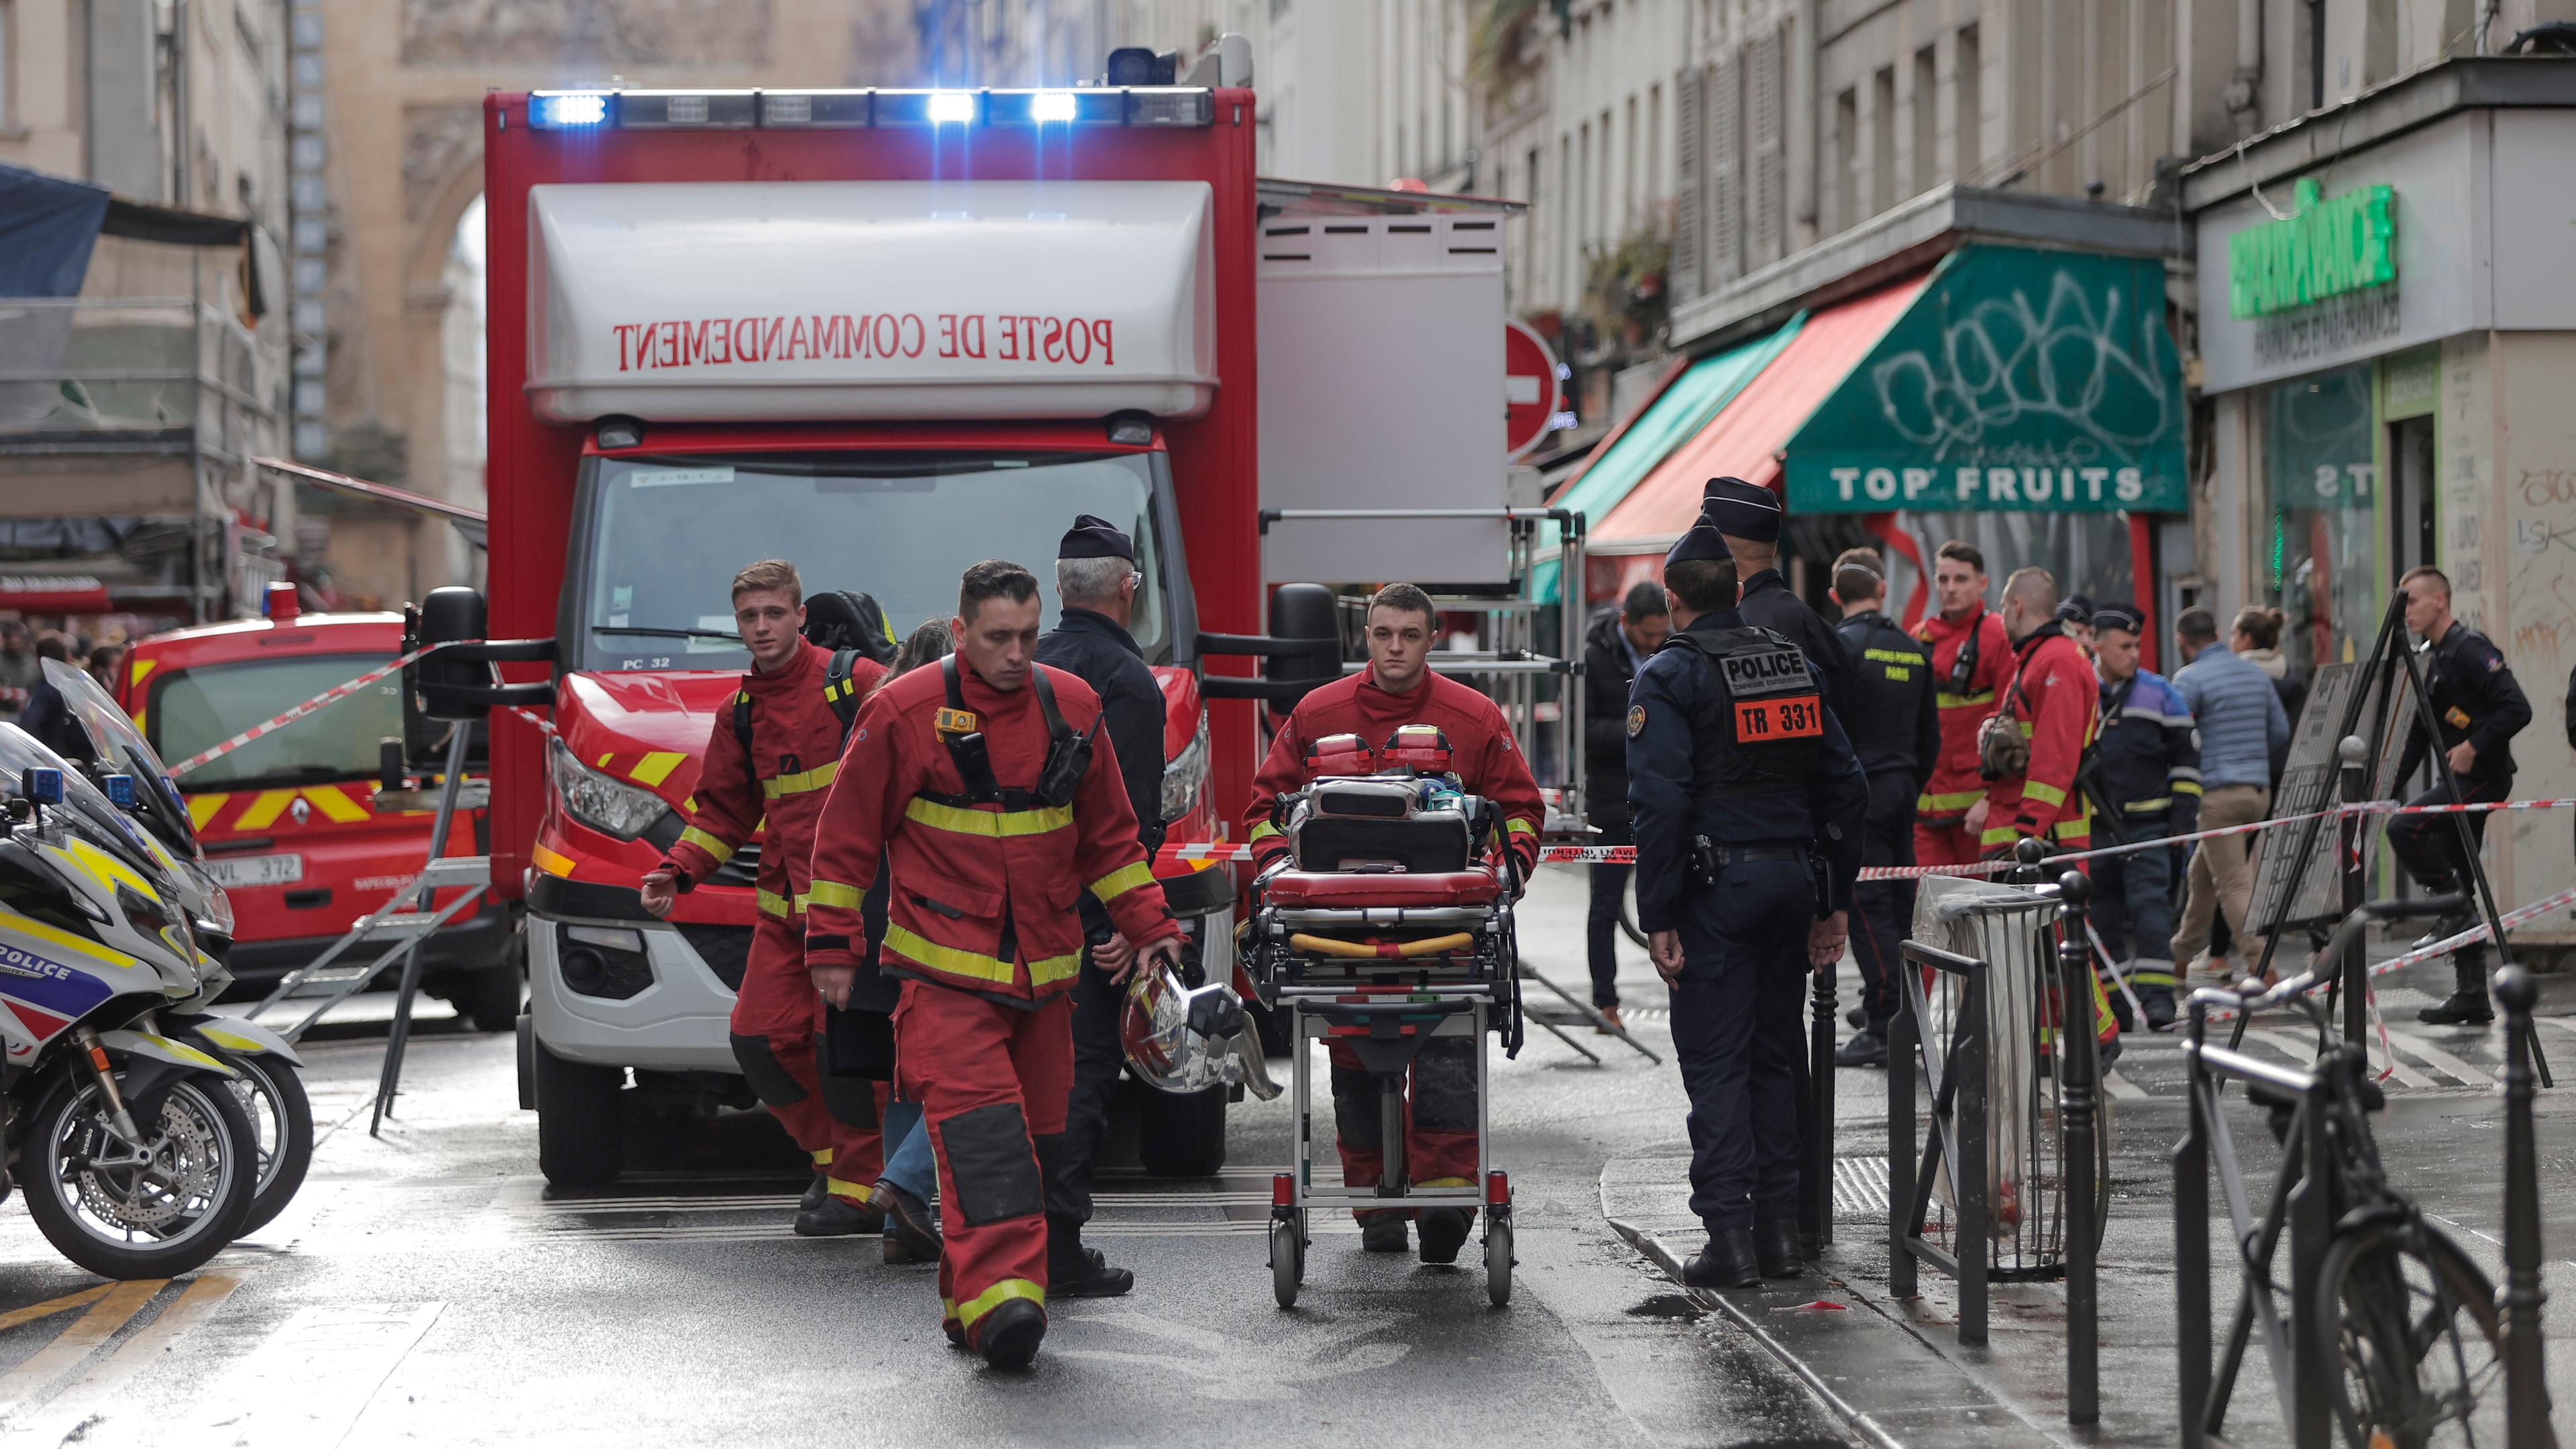 Feuerwehrsanitäter arbeiten am Tatort, nachdem im zehnten Pariser Arrondissement Schüsse abgefeuert wurden.